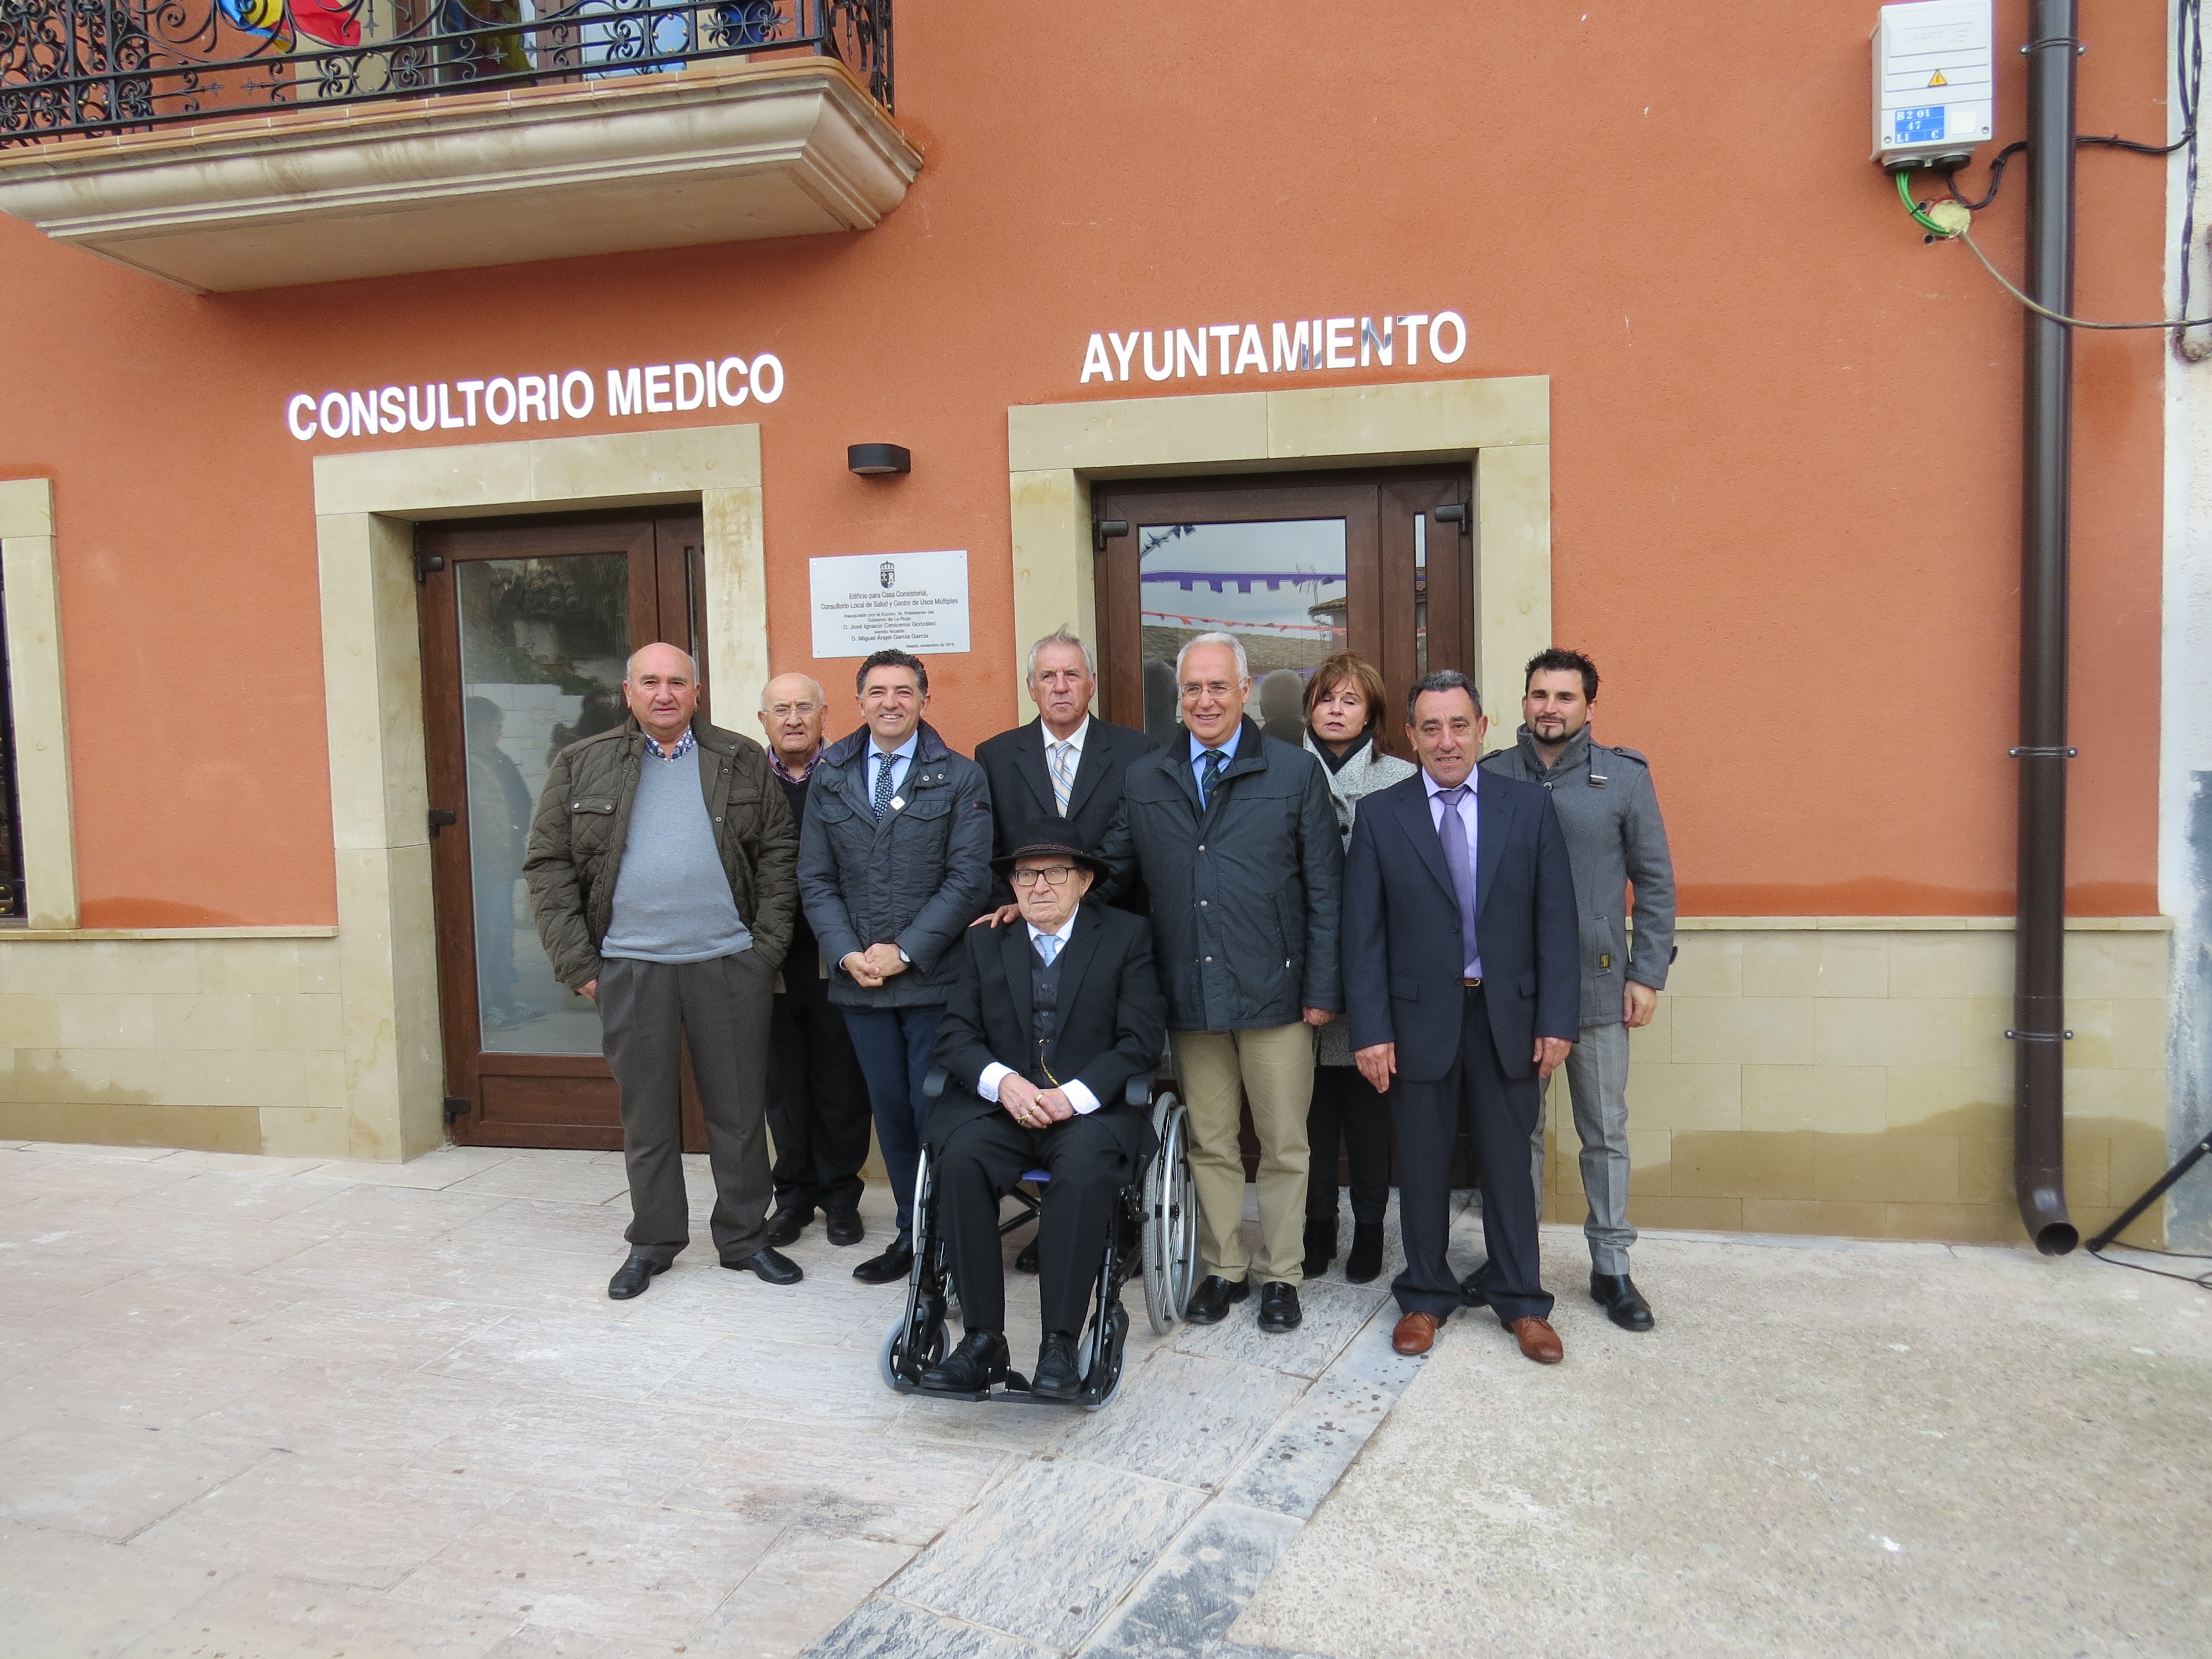 Inauguración del nuevo ayuntamiento de Alesón (2016) | Foto: Gobierno de La Rioja